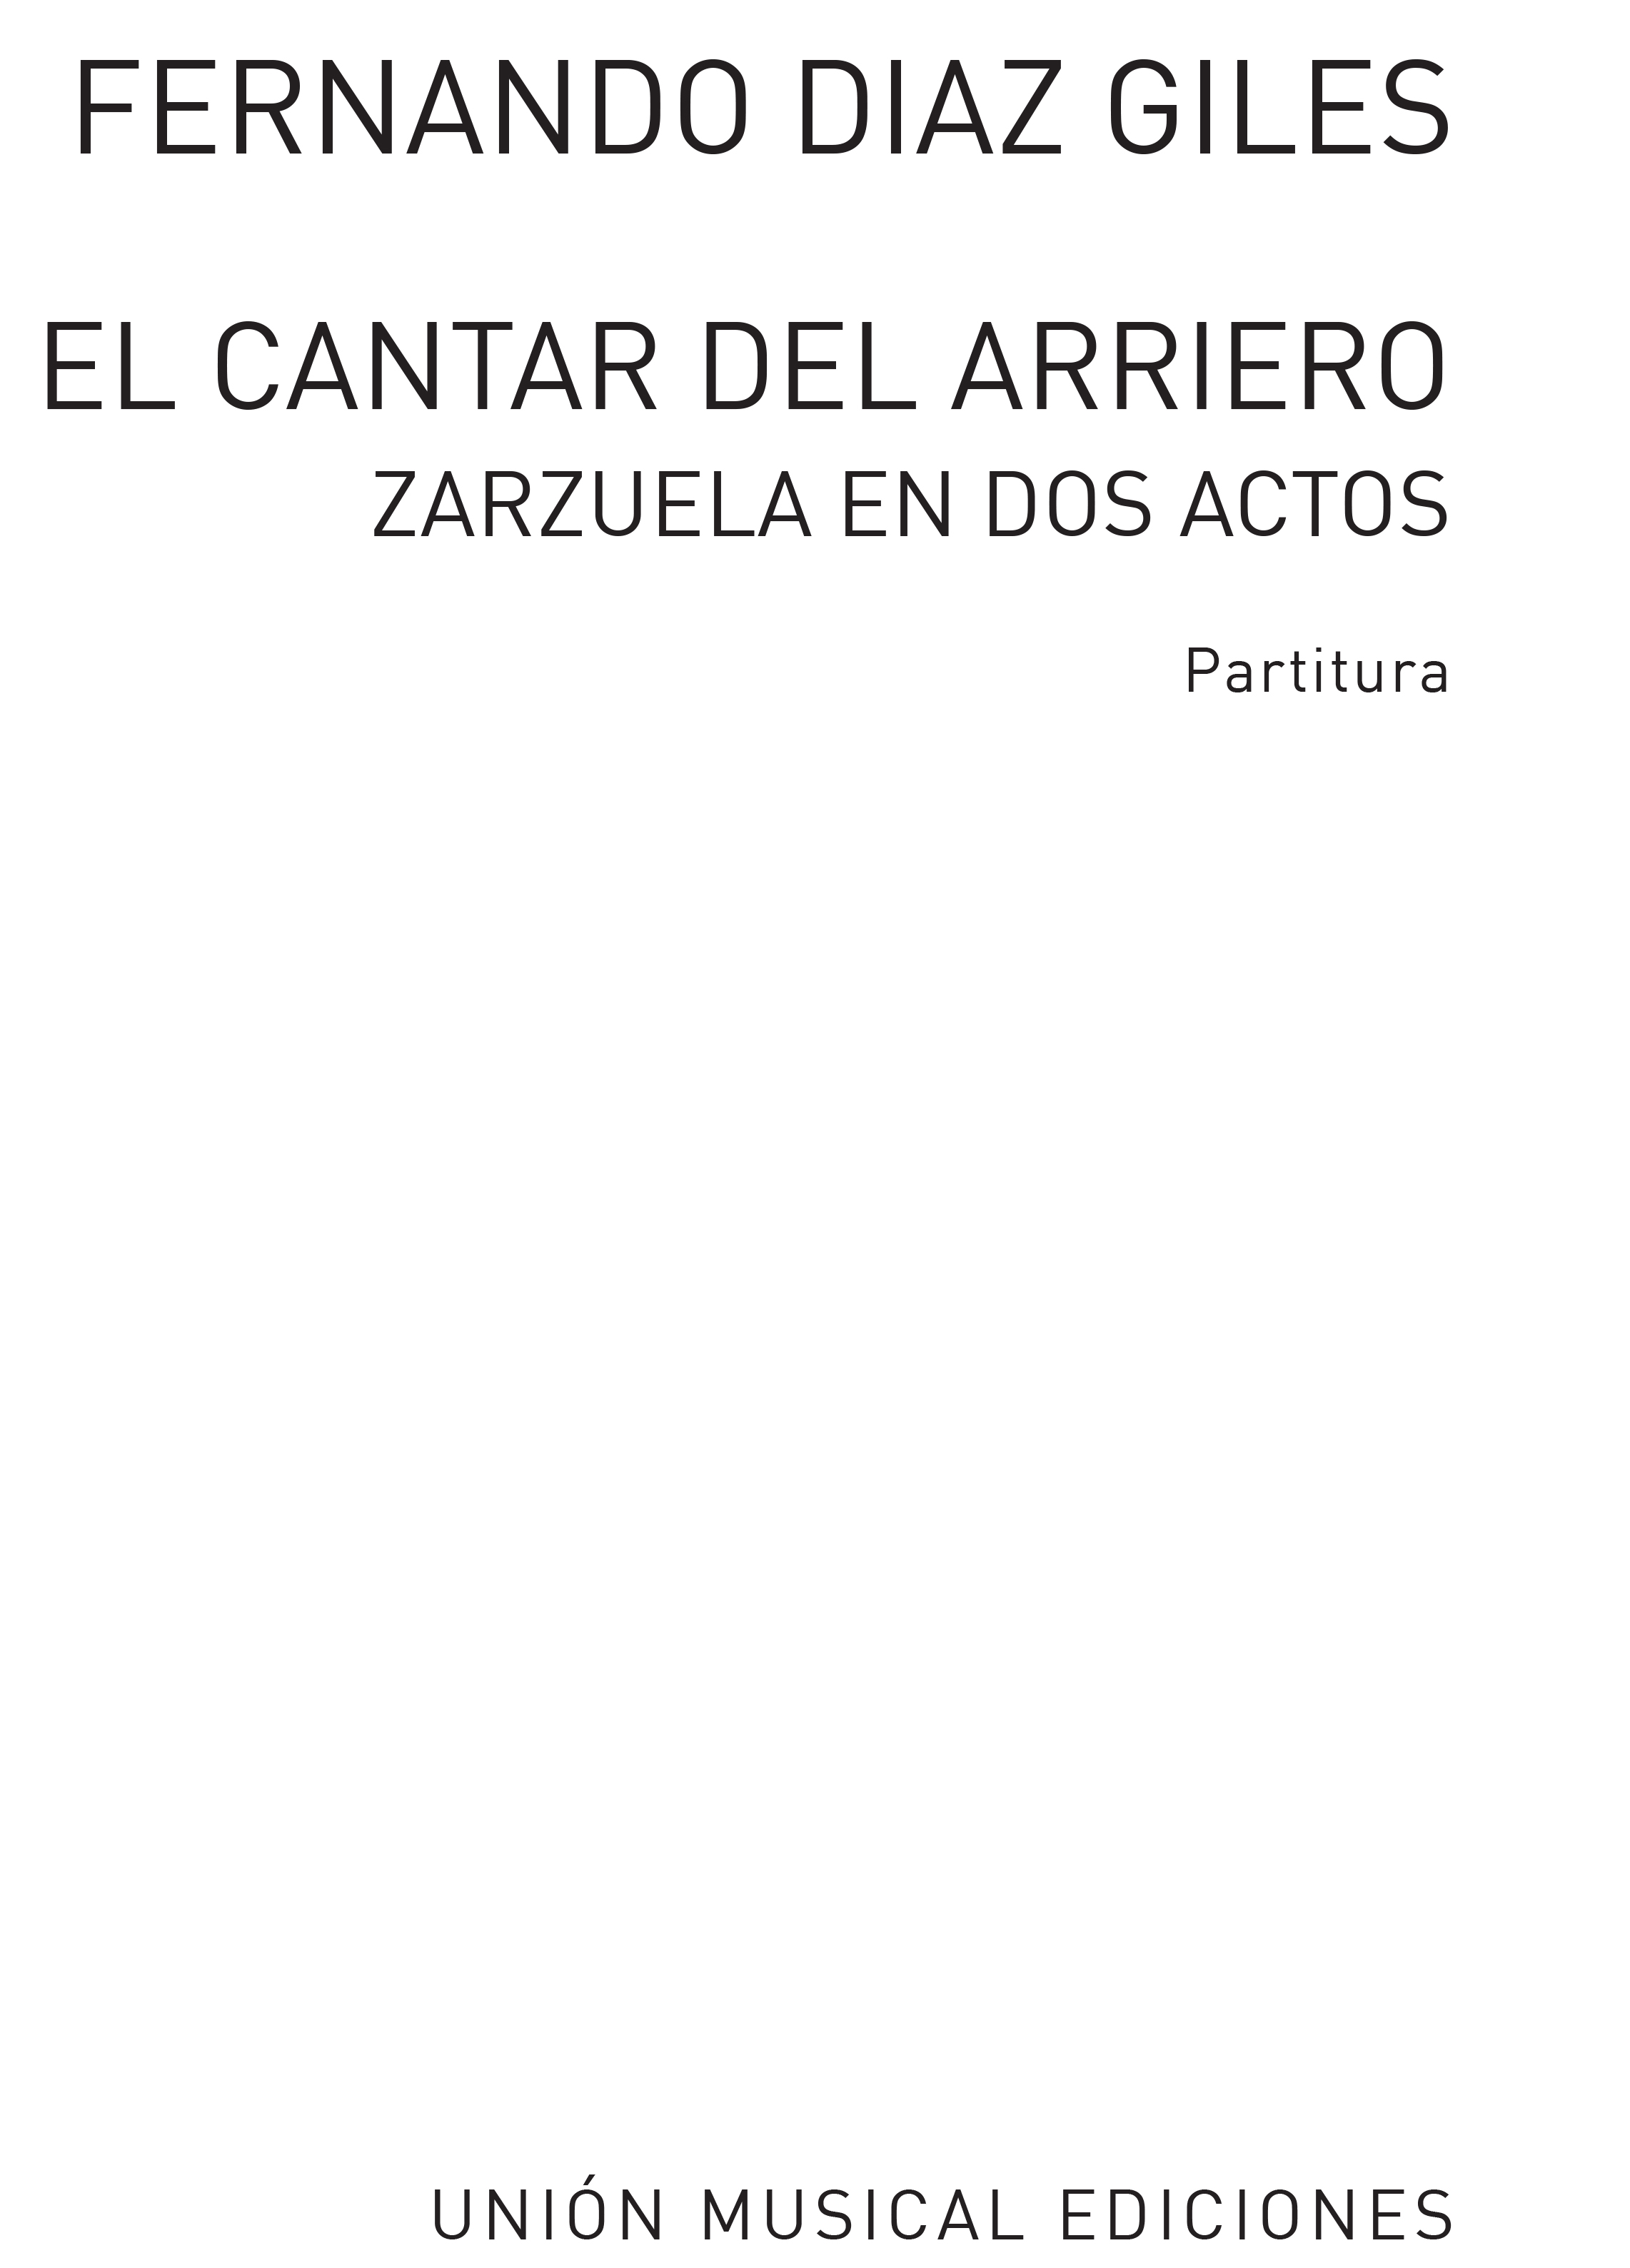 Fernando Diaz Giles: El Cantar Del Arriero Vocal Score